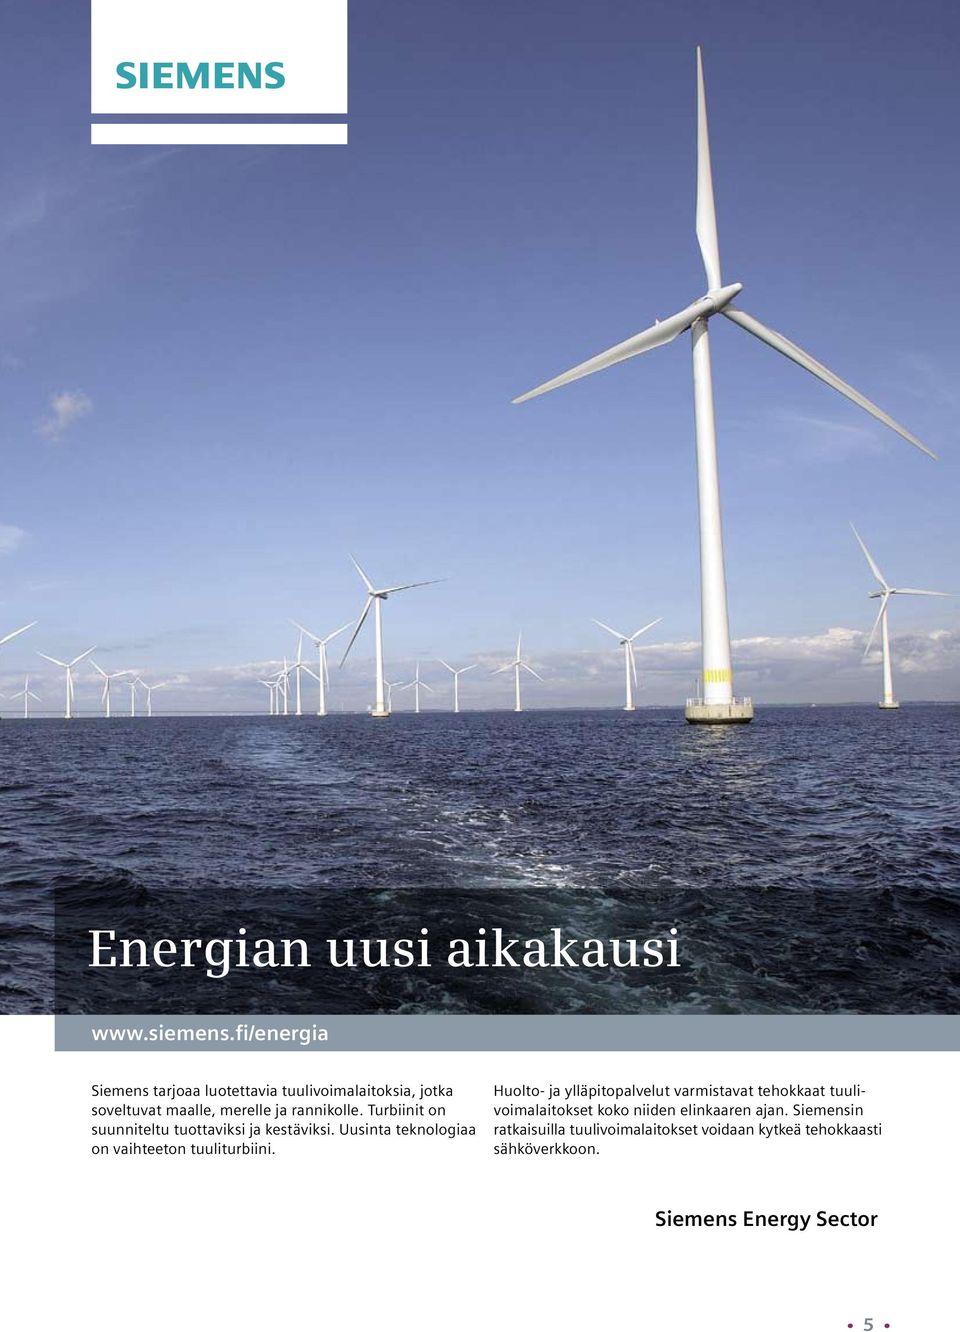 Turbiinit on suunniteltu tuottaviksi ja kestäviksi. Uusinta teknologiaa on vaihteeton tuuliturbiini.